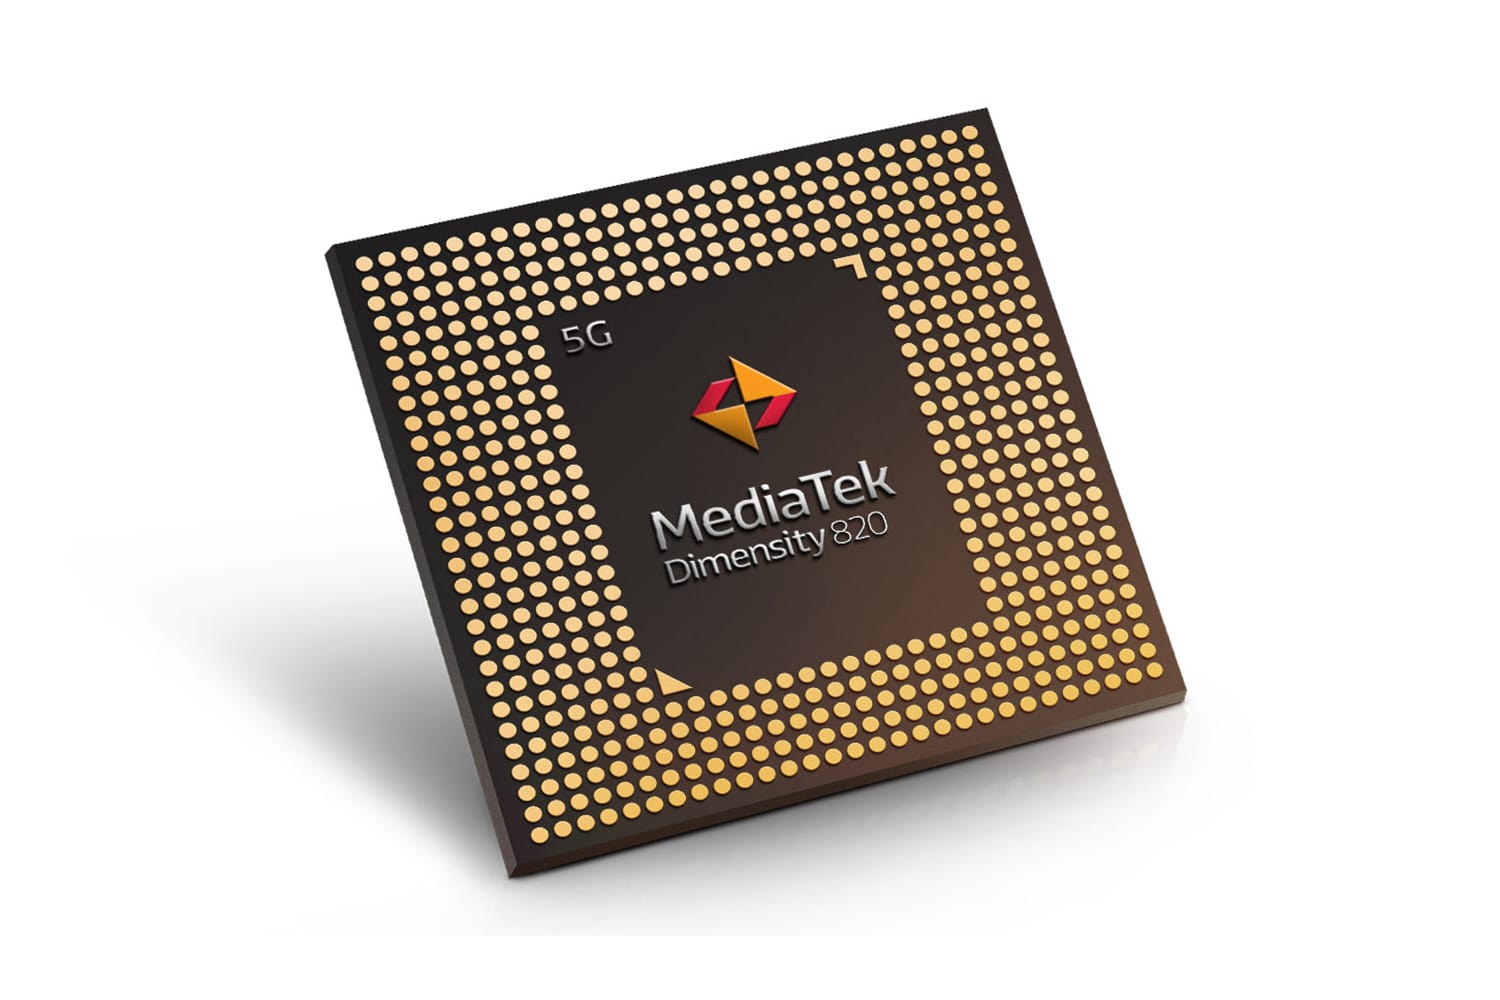 MediaTek’s new Dimensity 820 chip brings incredible 5G experiences to smartphones.